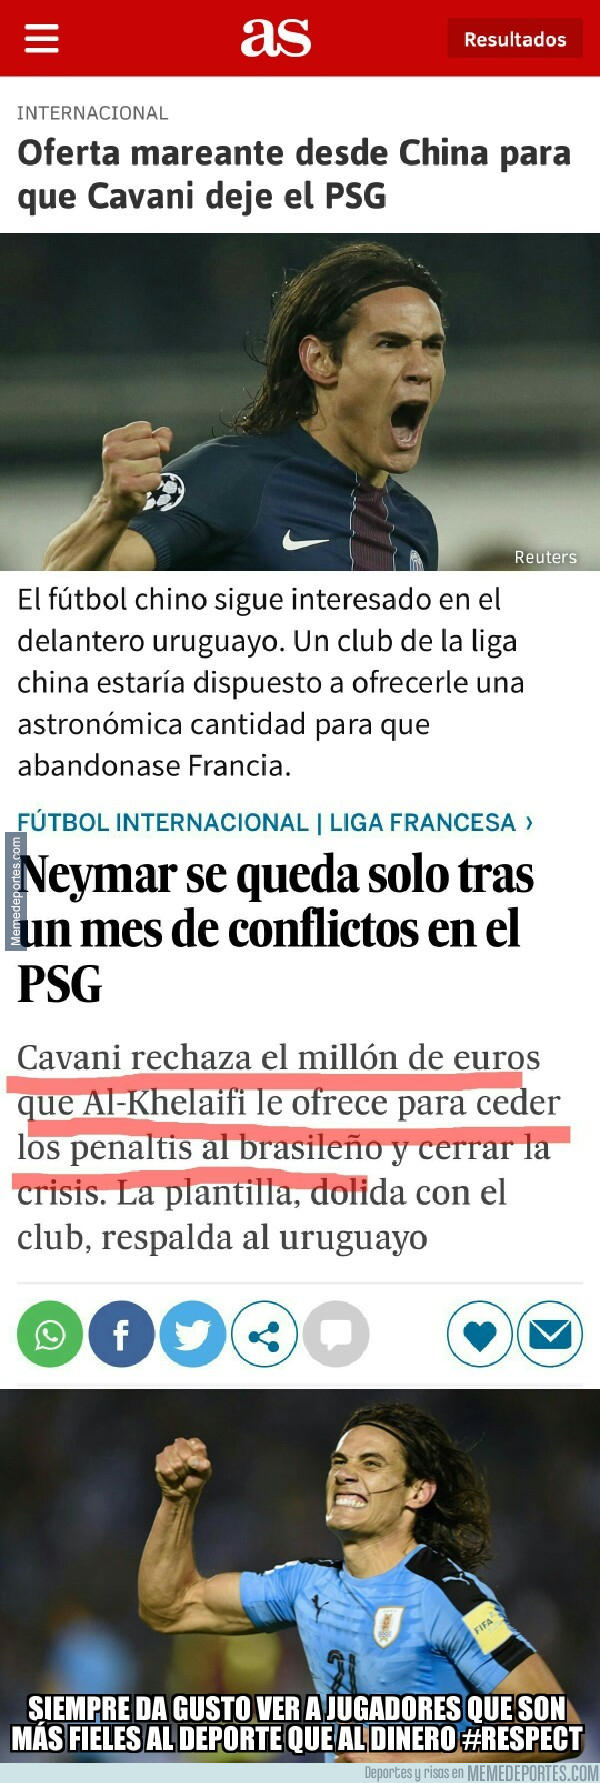 1000872 - Cavani se gana el respeto de todo el mundo del fútbol tras rechazar el vergonzoso soborno del PSG